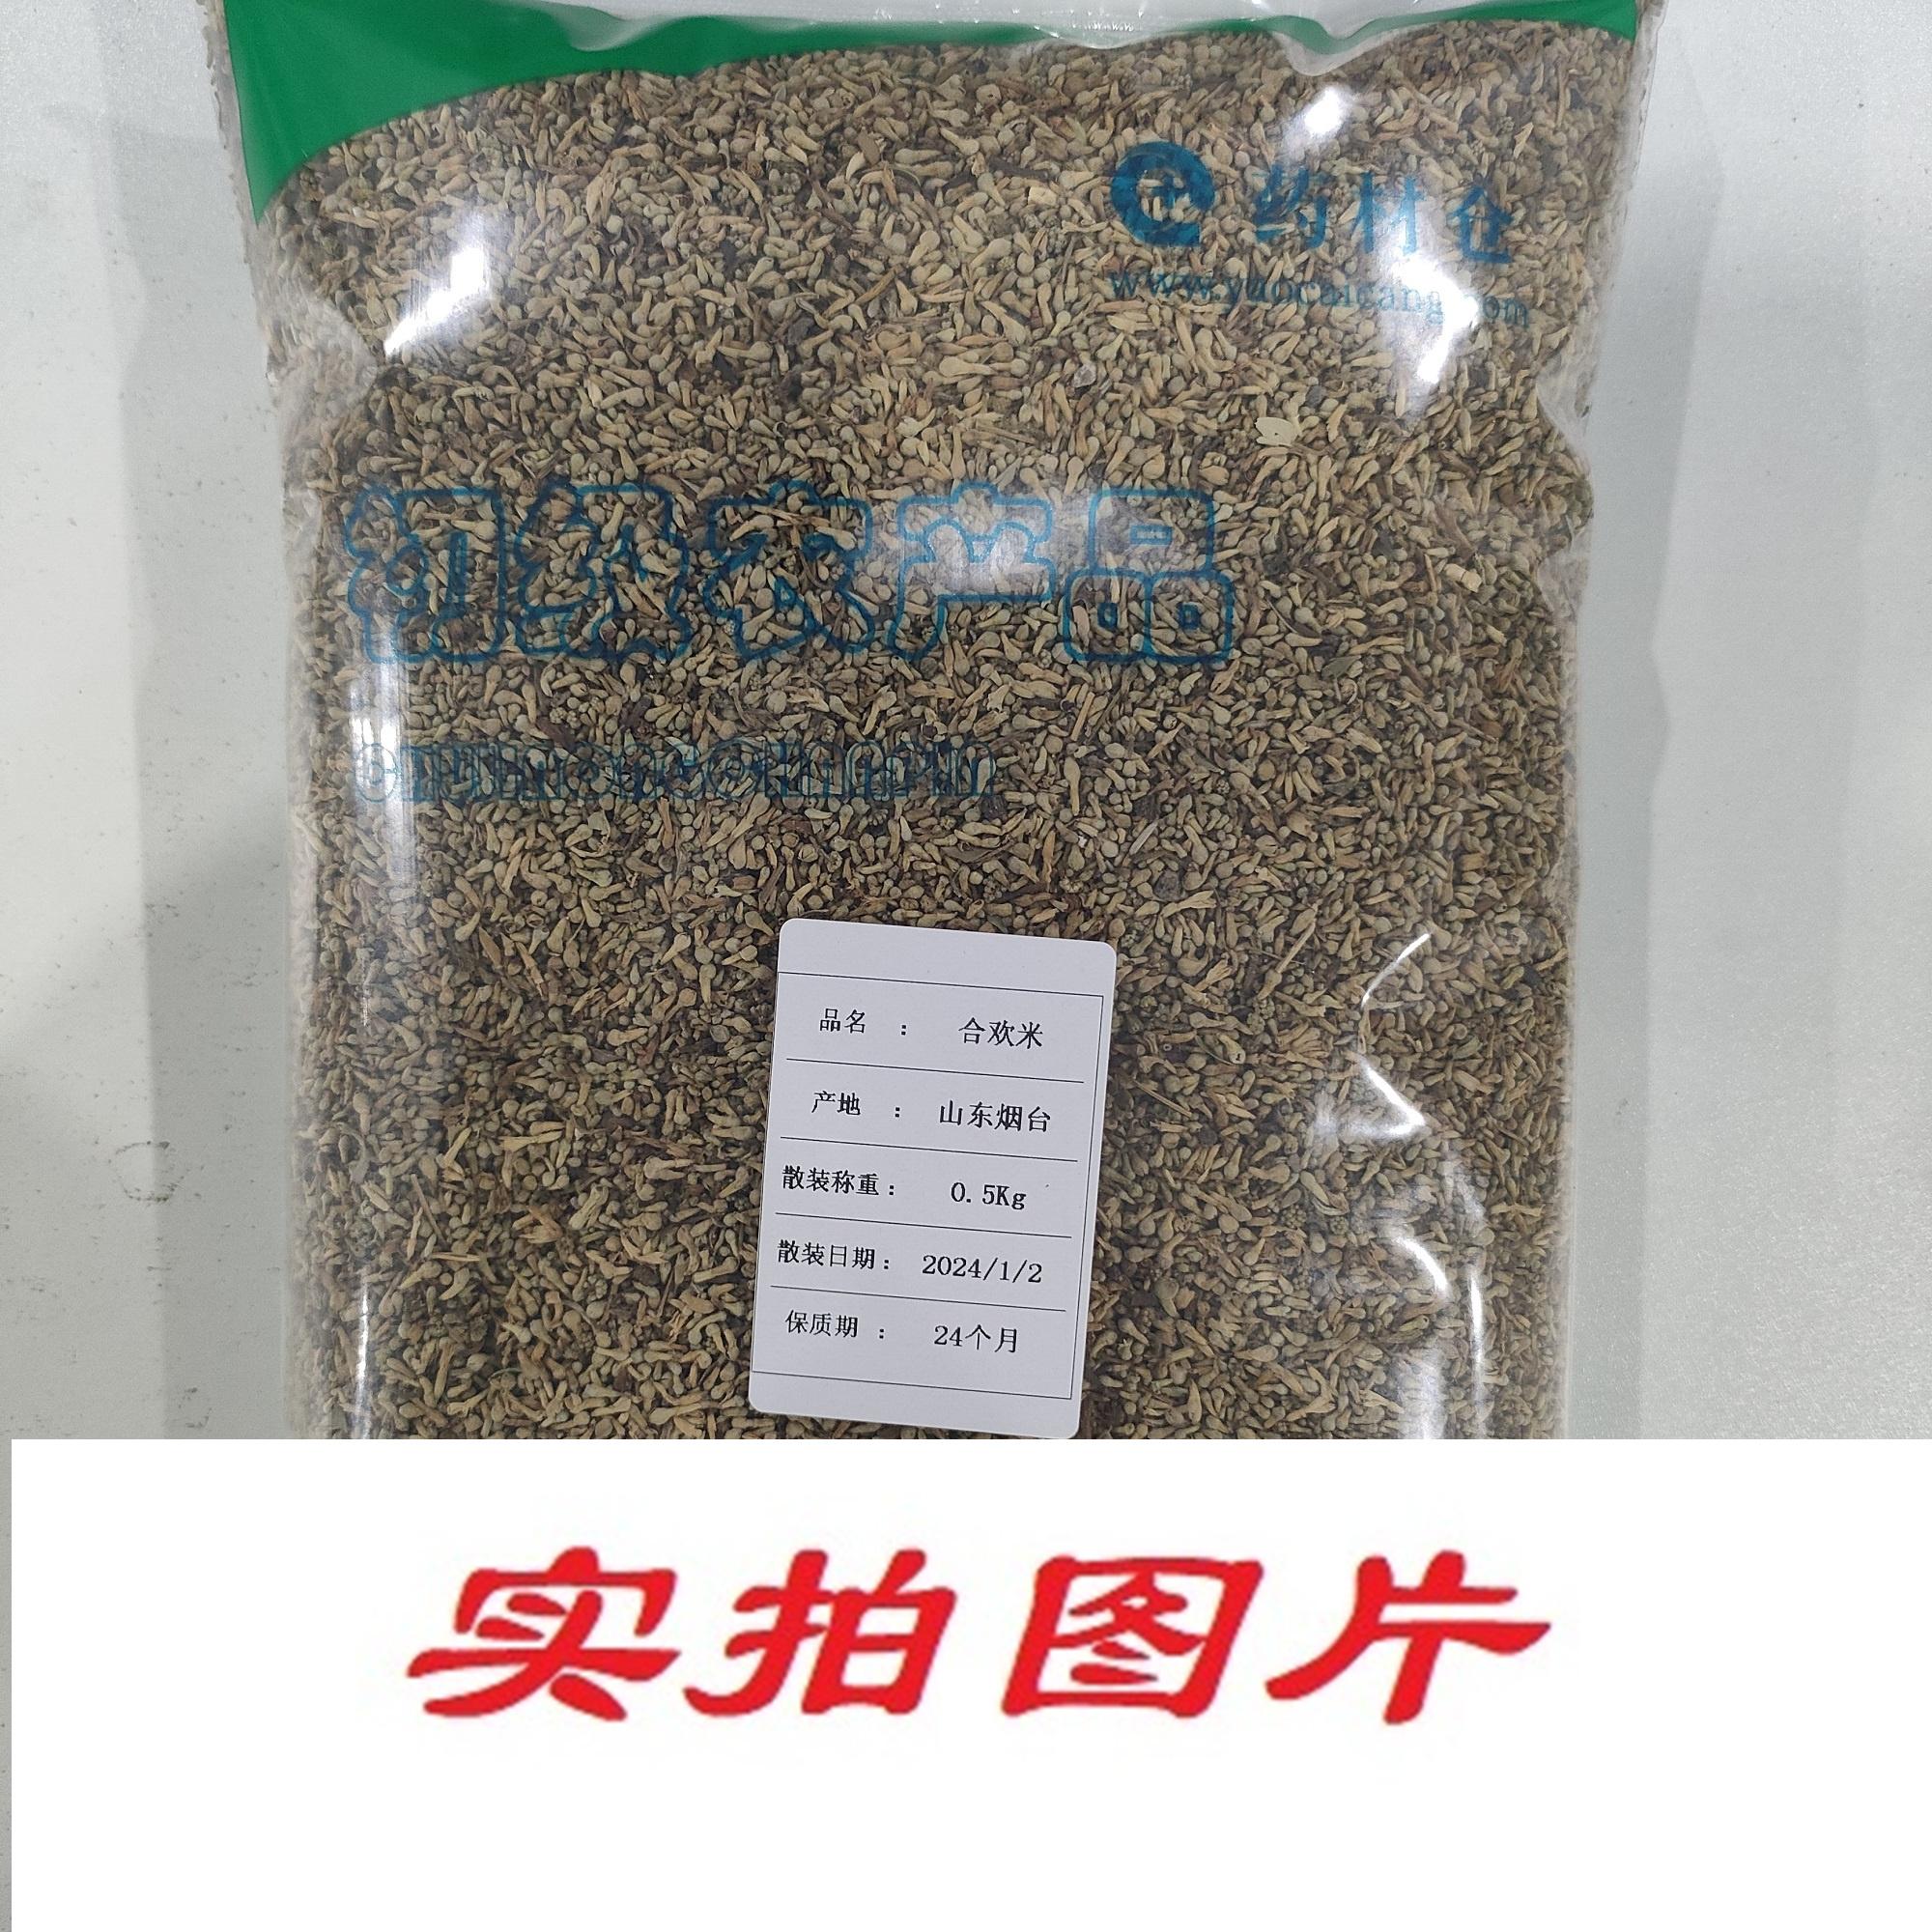 【】合欢米0.5kg-农副产品